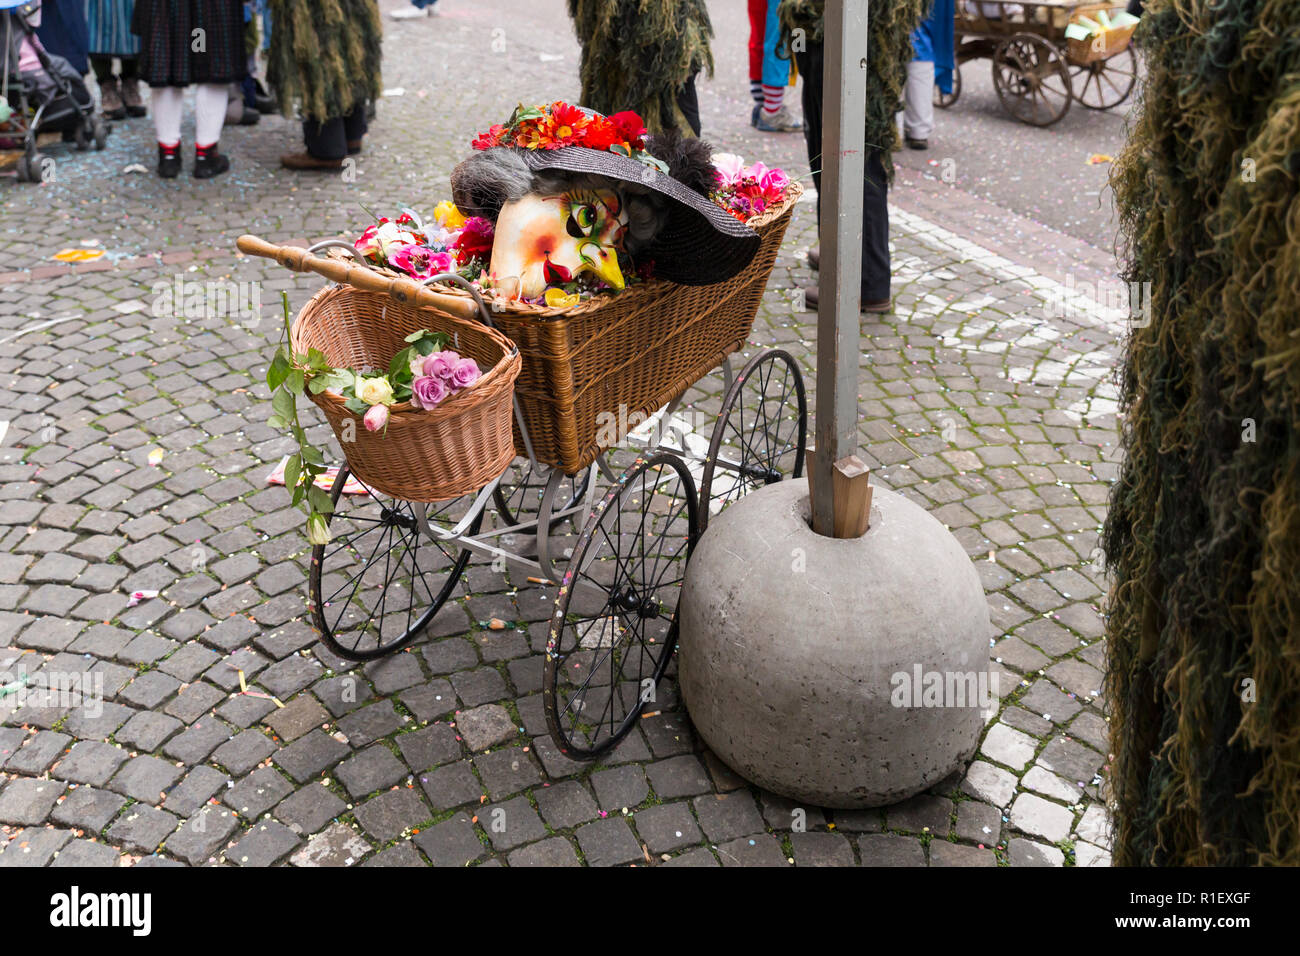 Carnaval de Basilea de 2018. Schneidergasse, Basilea, Suiza - 19 de febrero de 2018. Un viejo estilo baby buggy con una máscara de carnaval perteneciente a un alti dande Foto de stock